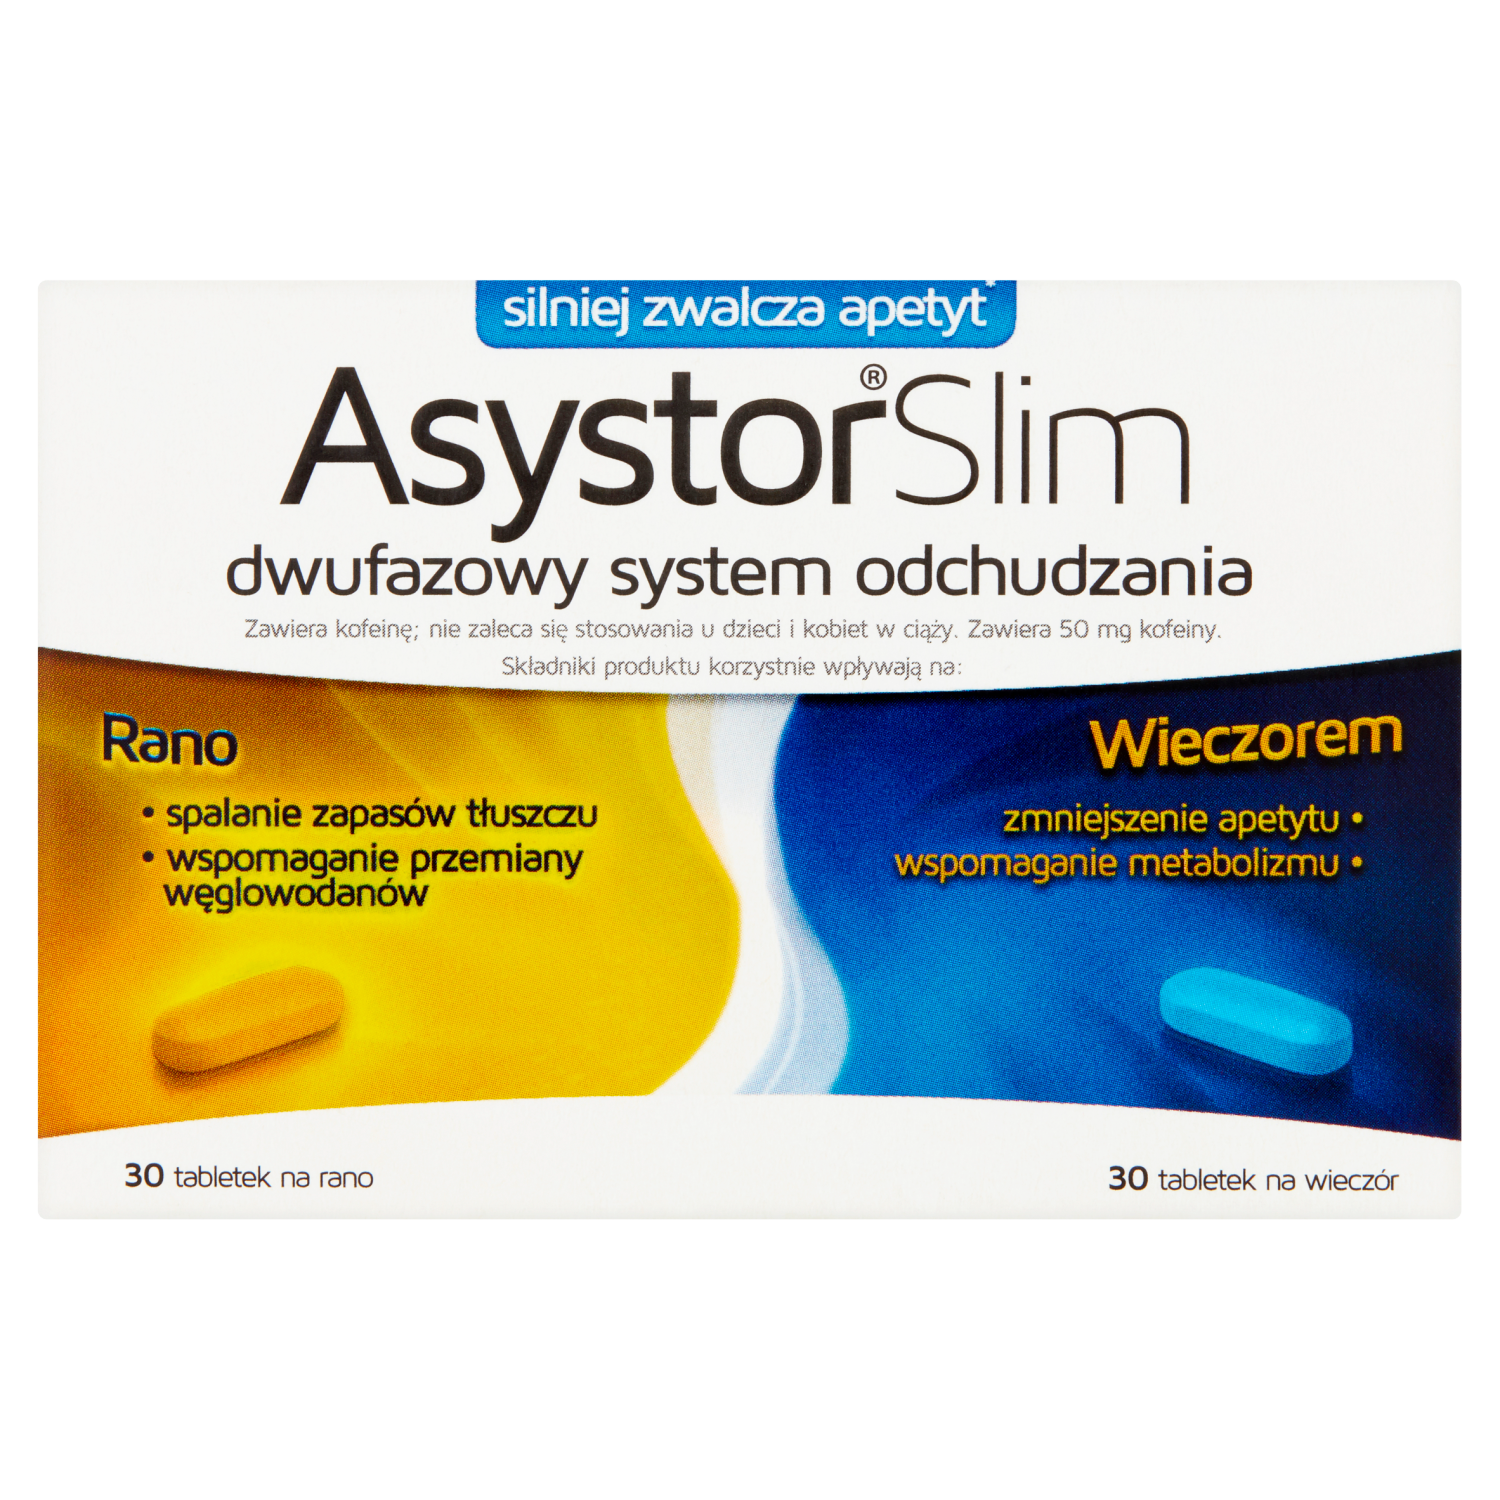 liporedium биологически активная добавка 60 таблеток 1 упаковка Asystor Slim биологически активная добавка, 60 таблеток/1 упаковка